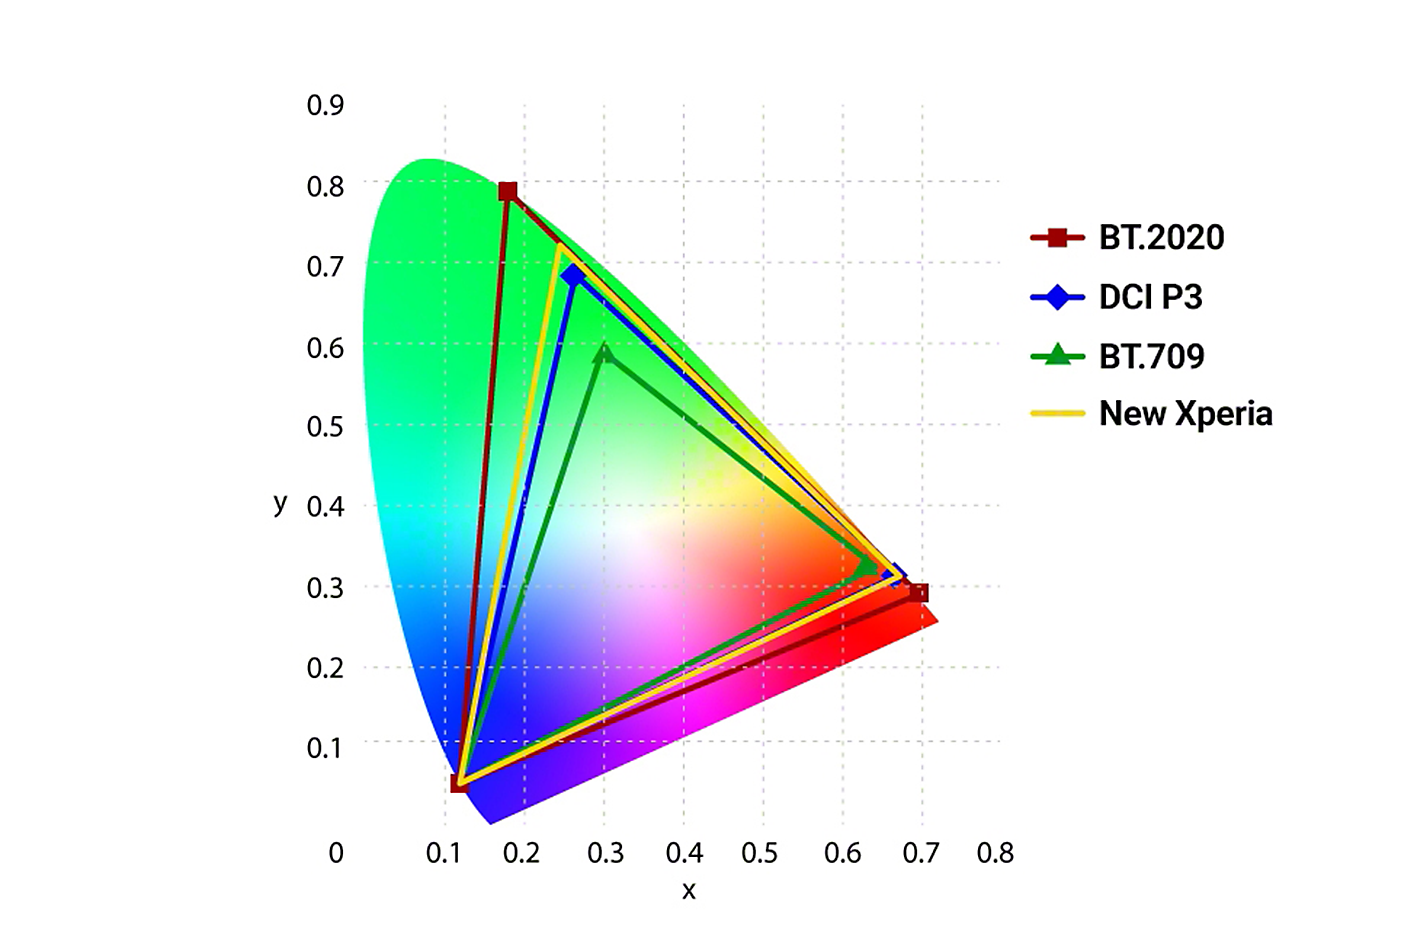 ภาพกราฟิกเปรียบเทียบความแม่นยำสีของ BT.2020, DCI P3, BT.709 และ Xperia รุ่นใหม่